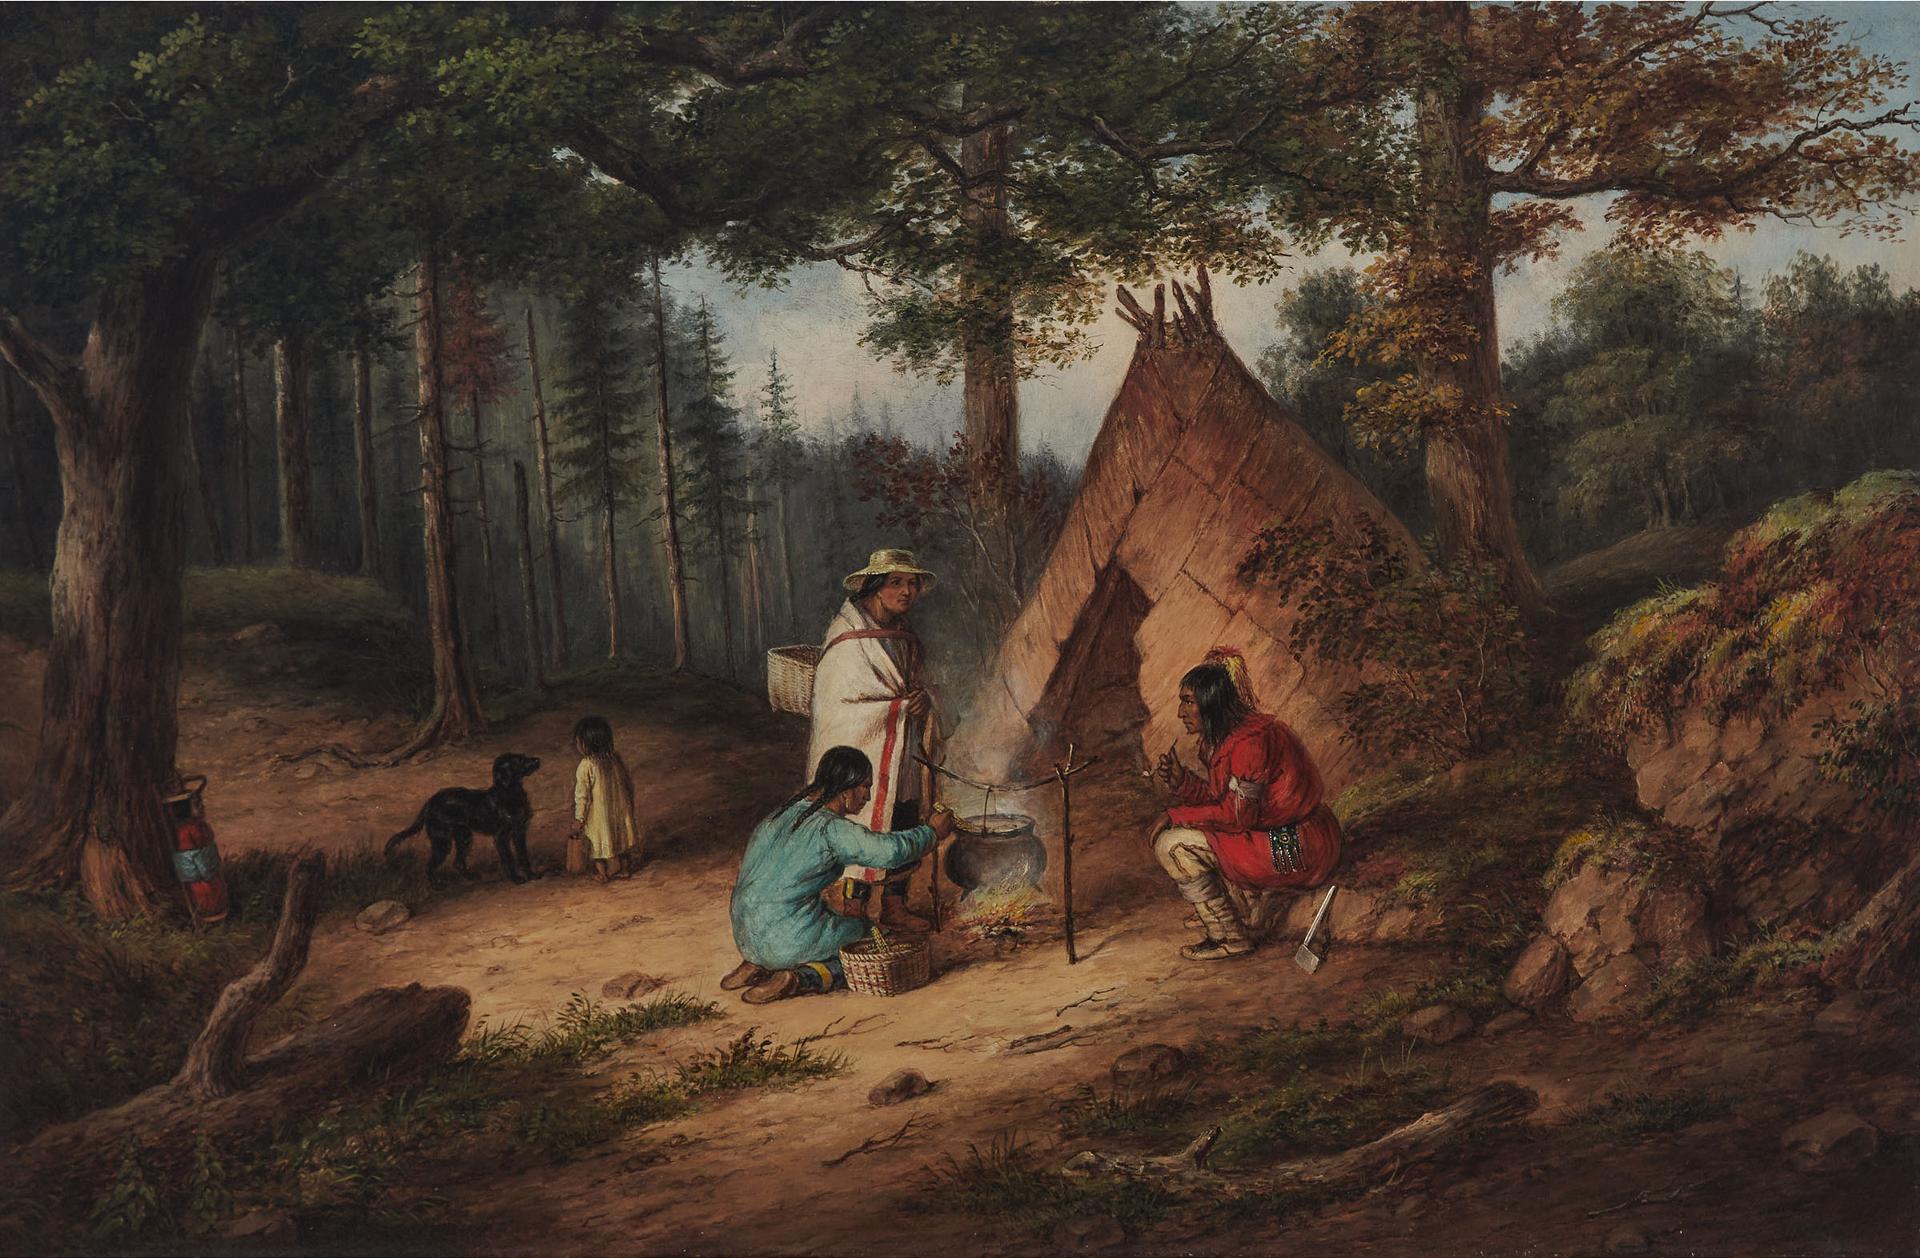 Cornelius David Krieghoff (1815-1872) - Caughnawaga Indians At Camp